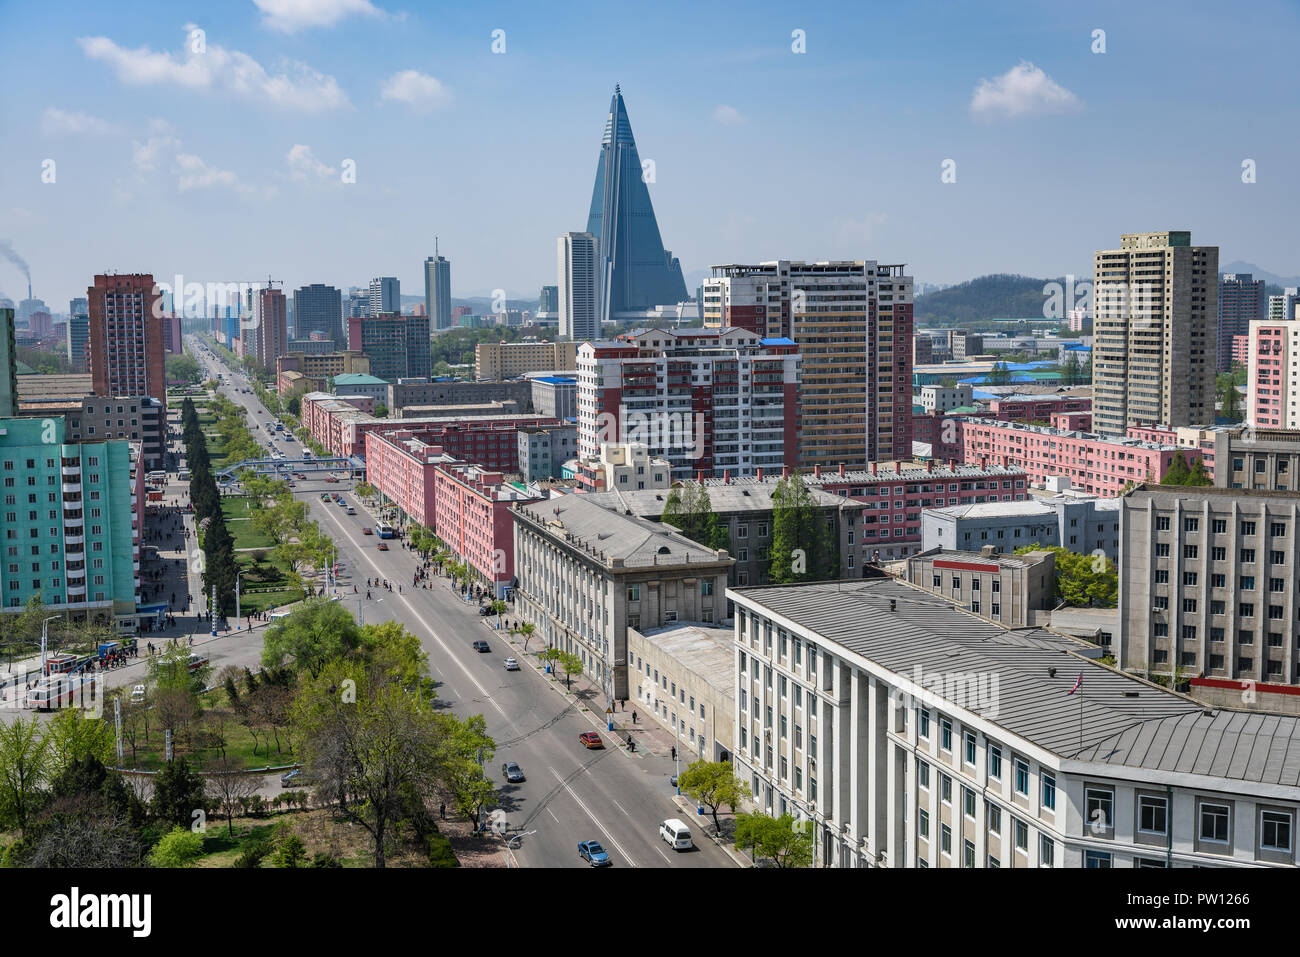 Città di Pyongyang scape, skyline di Pyongyang in Corea del Nord, capitale della Repubblica democratica popolare di Corea (Repubblica democratica popolare di Corea), strada, automobili e grattacieli Foto Stock